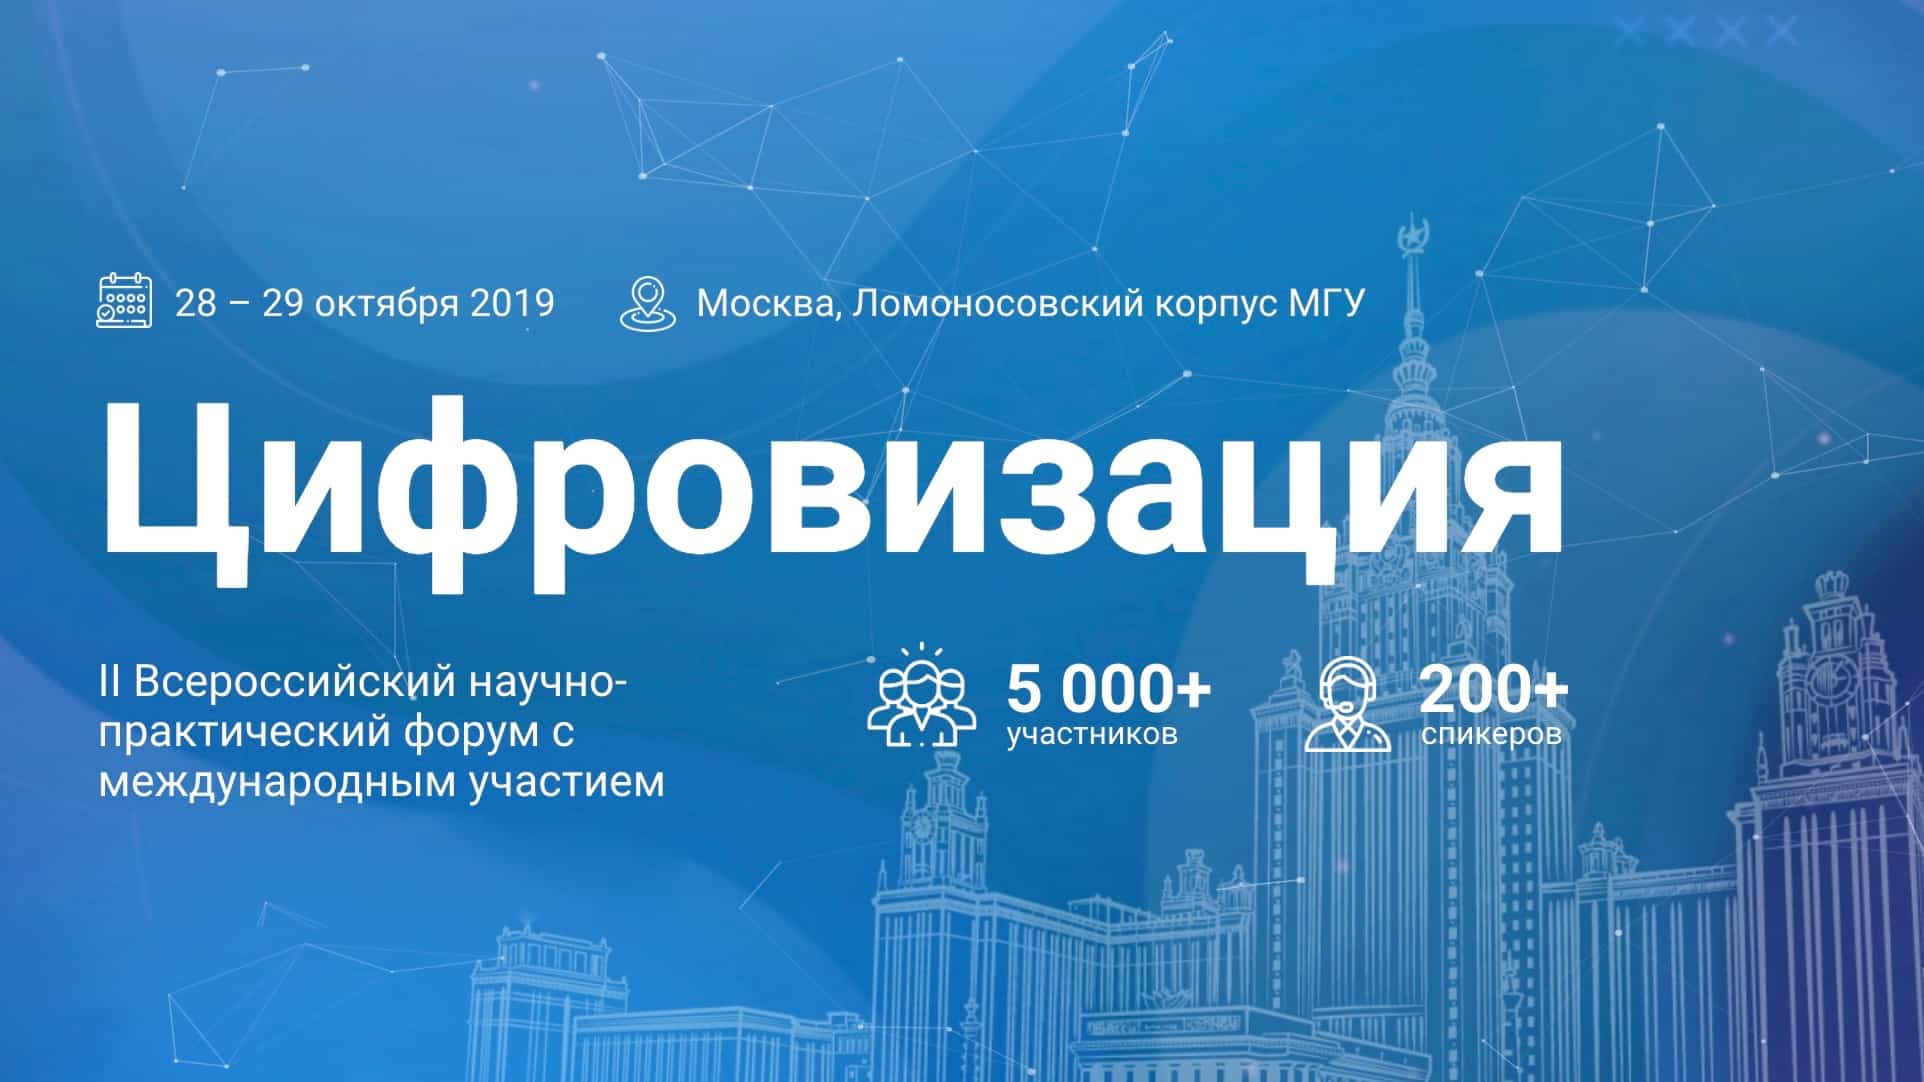 МГУ приглашает на форум Цифровизация – 2019